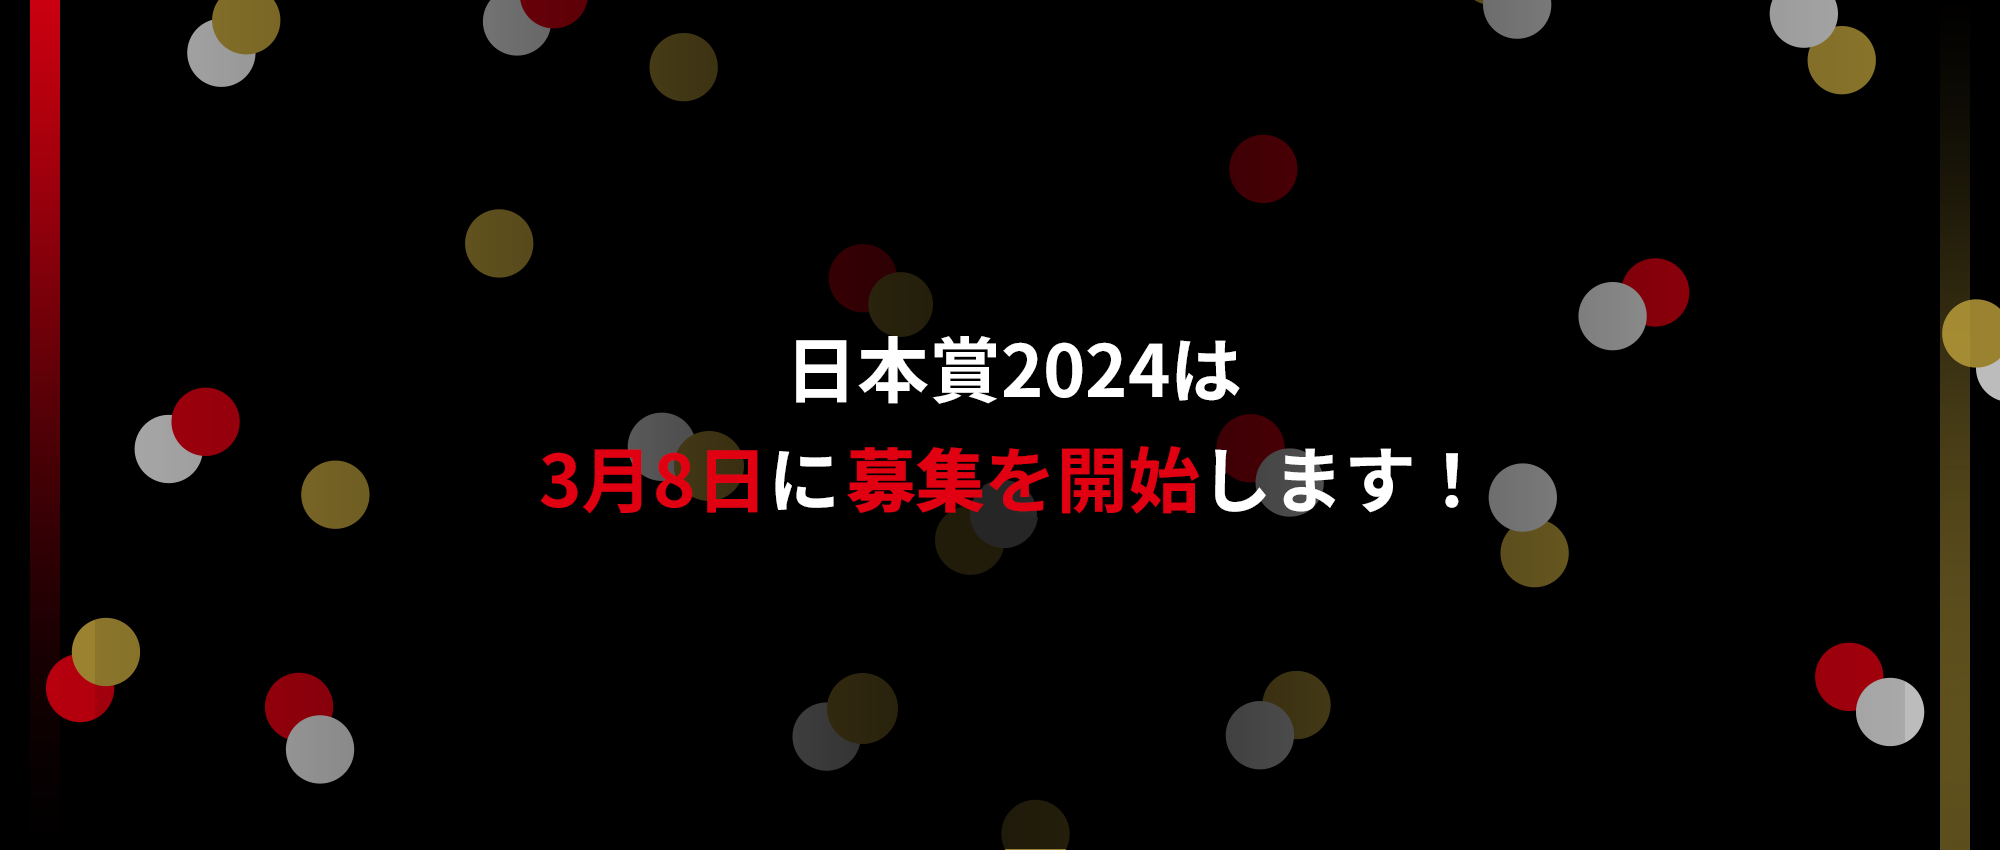 日本賞2024は3月8日に応募を開始します！